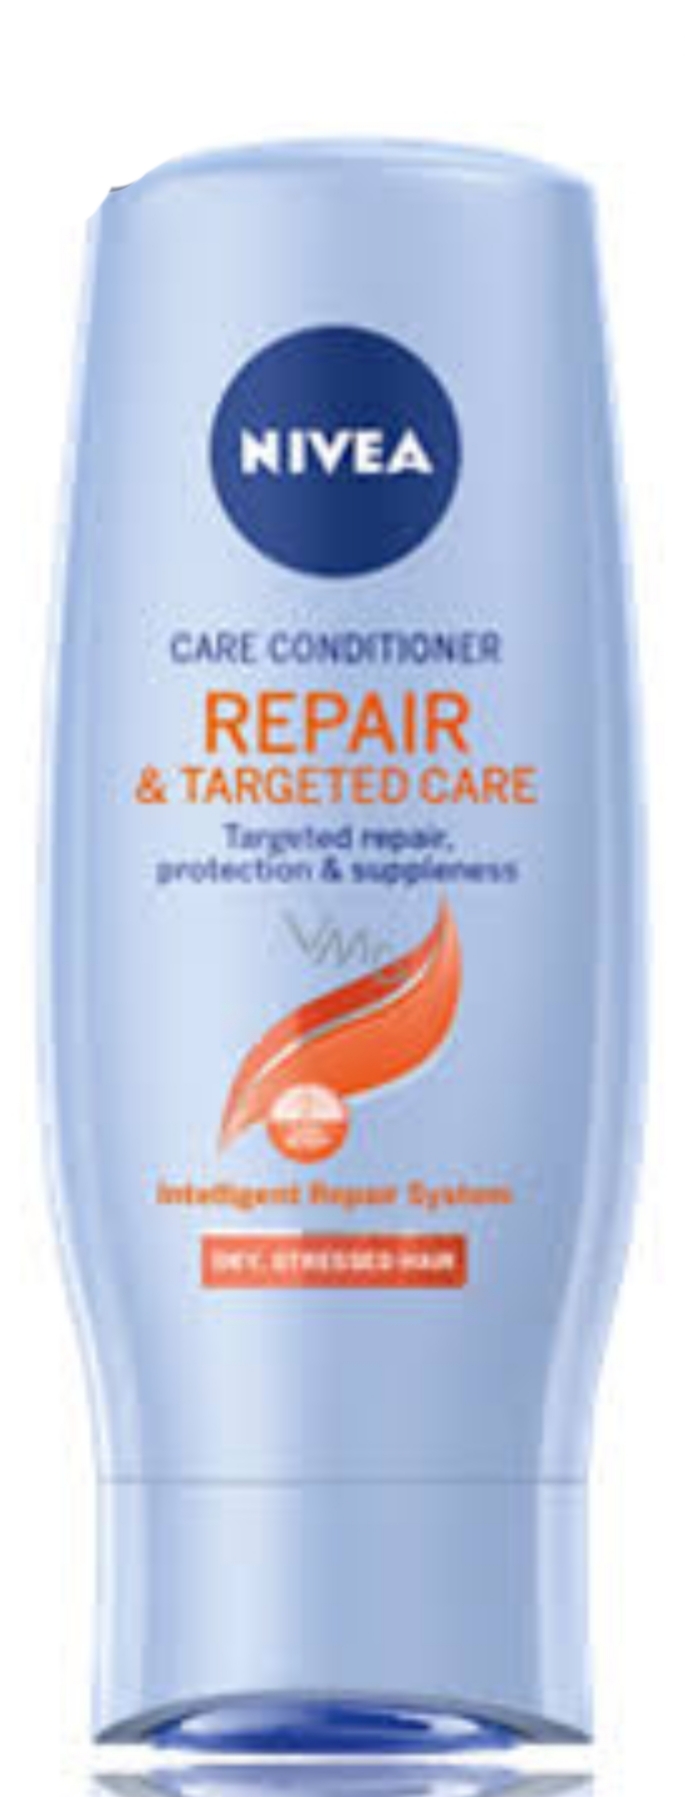 فراورده های حالت دهنده ،نرم کننده وتثبیت کننده آرایش مو (کرمها ، لوسیونها وروغنها) NIVEA CARE CONDITIONER REPAIR TARGETED CARE packaging 2